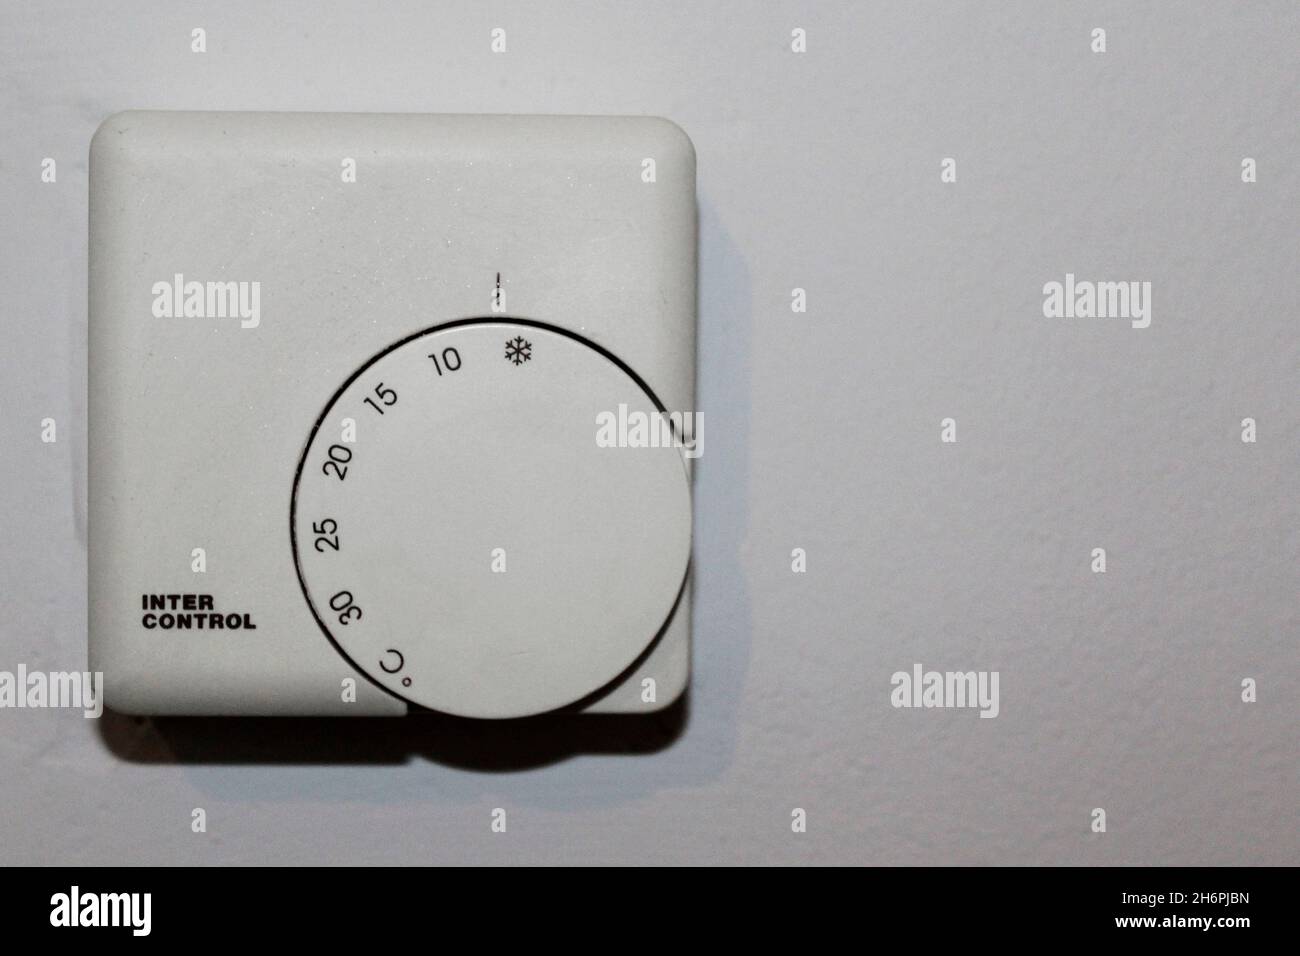 Weißer Termostato zur Wärmeregulierung von 0 bis 30 Grad einstellbar, en einer Wohnung an einer Wand, komplett abgestellt. Foto de stock